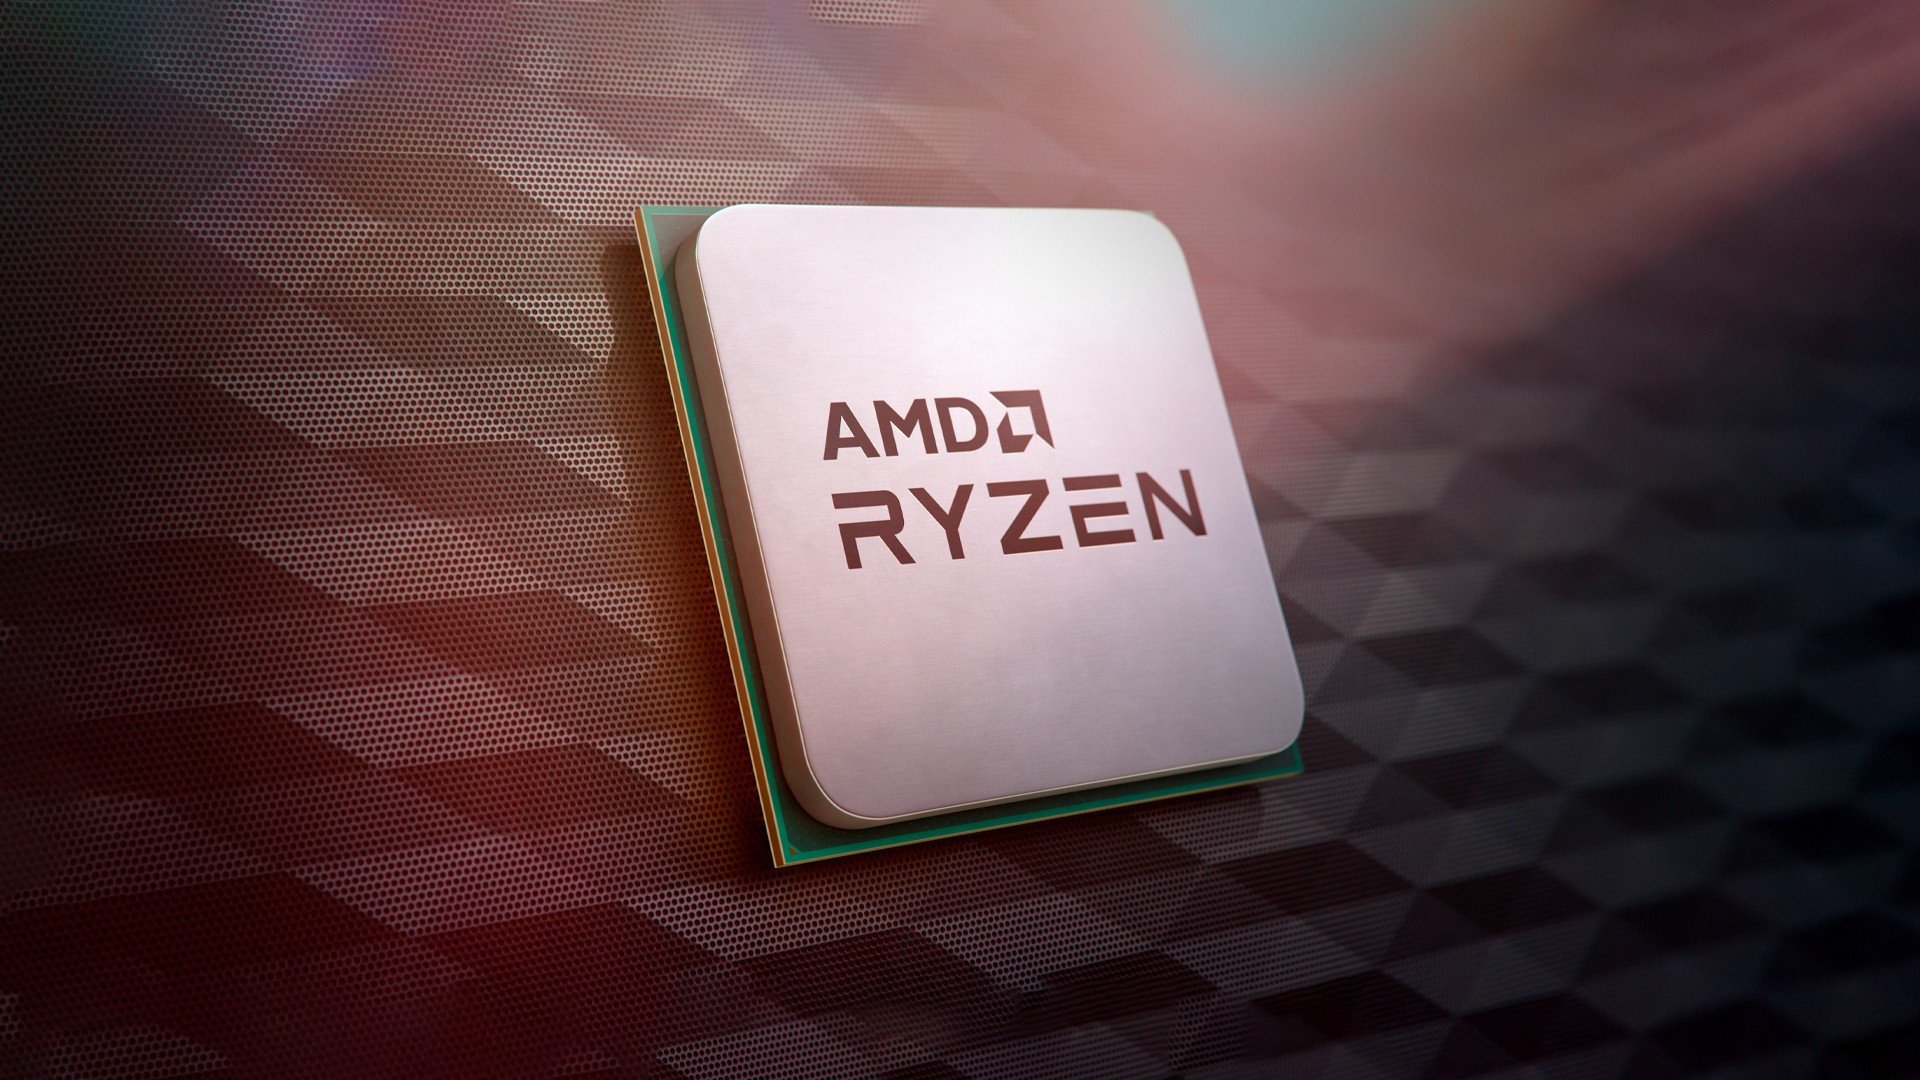 AMD Ryzen 7 6800U é mais veloz que o Intel Core i5-1240P, mas GPU Radeon  680M decepciona em jogos 